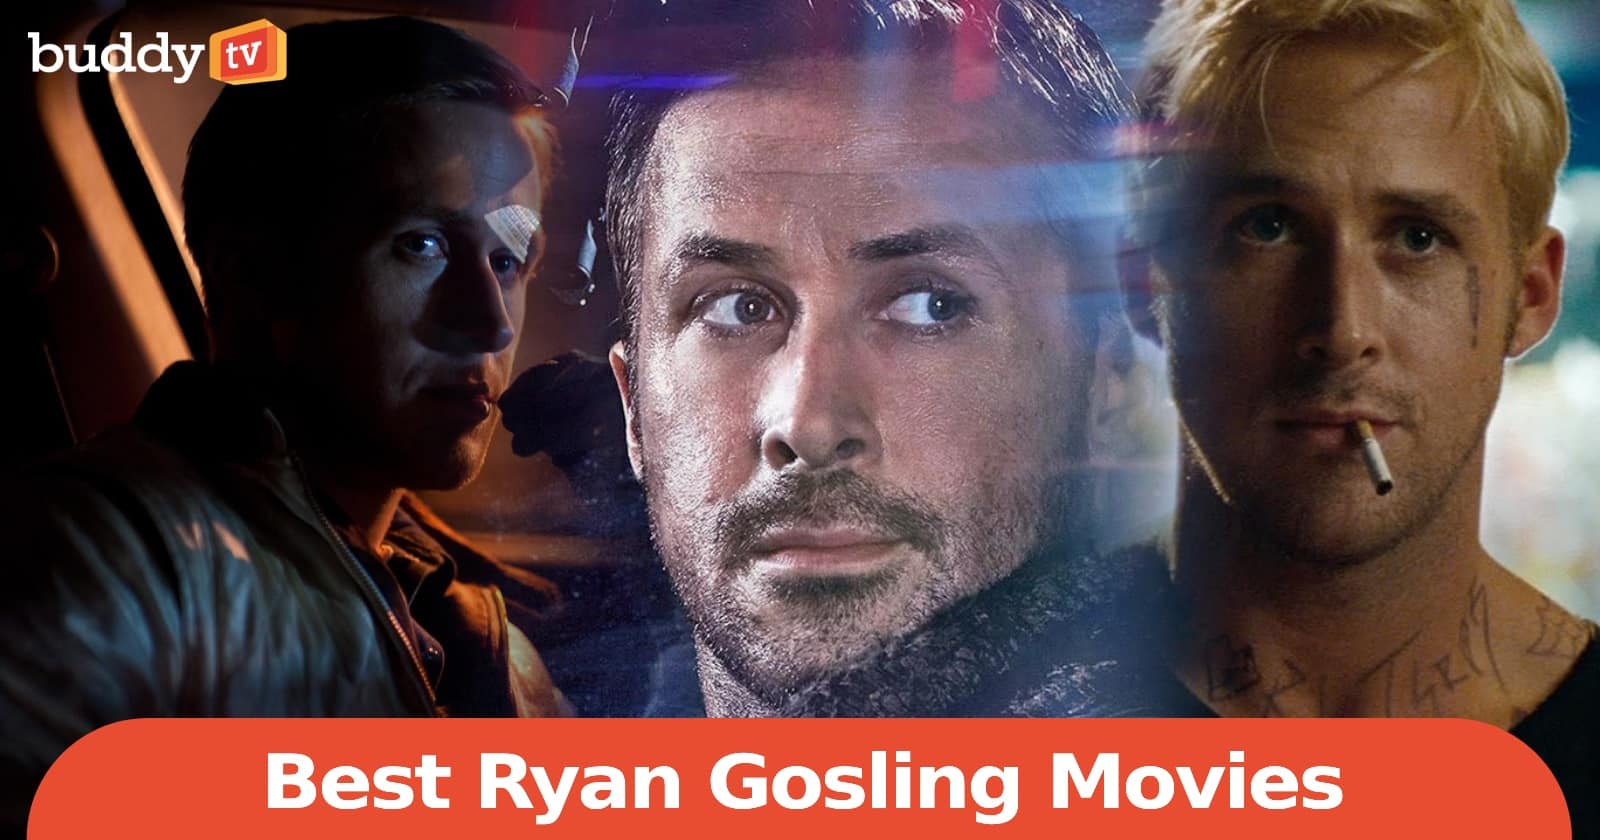 10 Best Ryan Gosling Movies, Ranked by Viewers